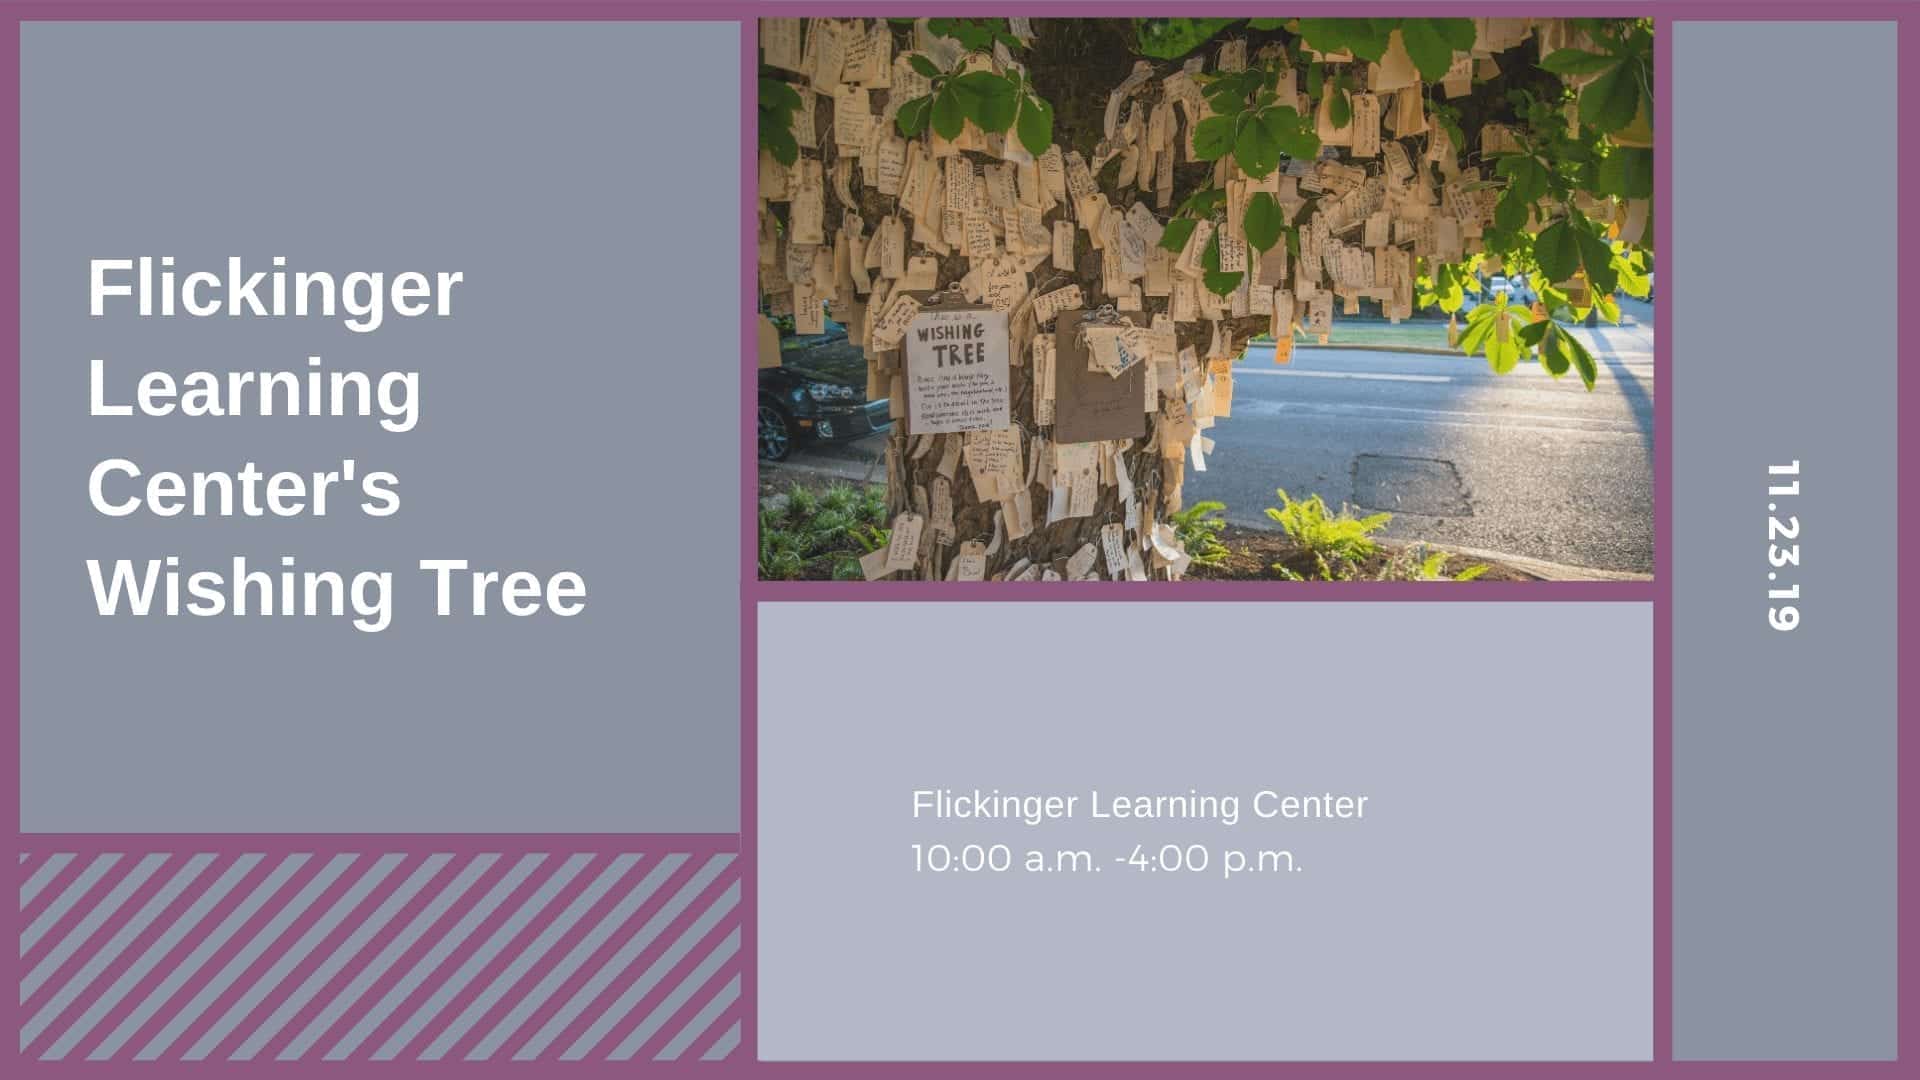 Flickinger Learning Center's Wishing Tree